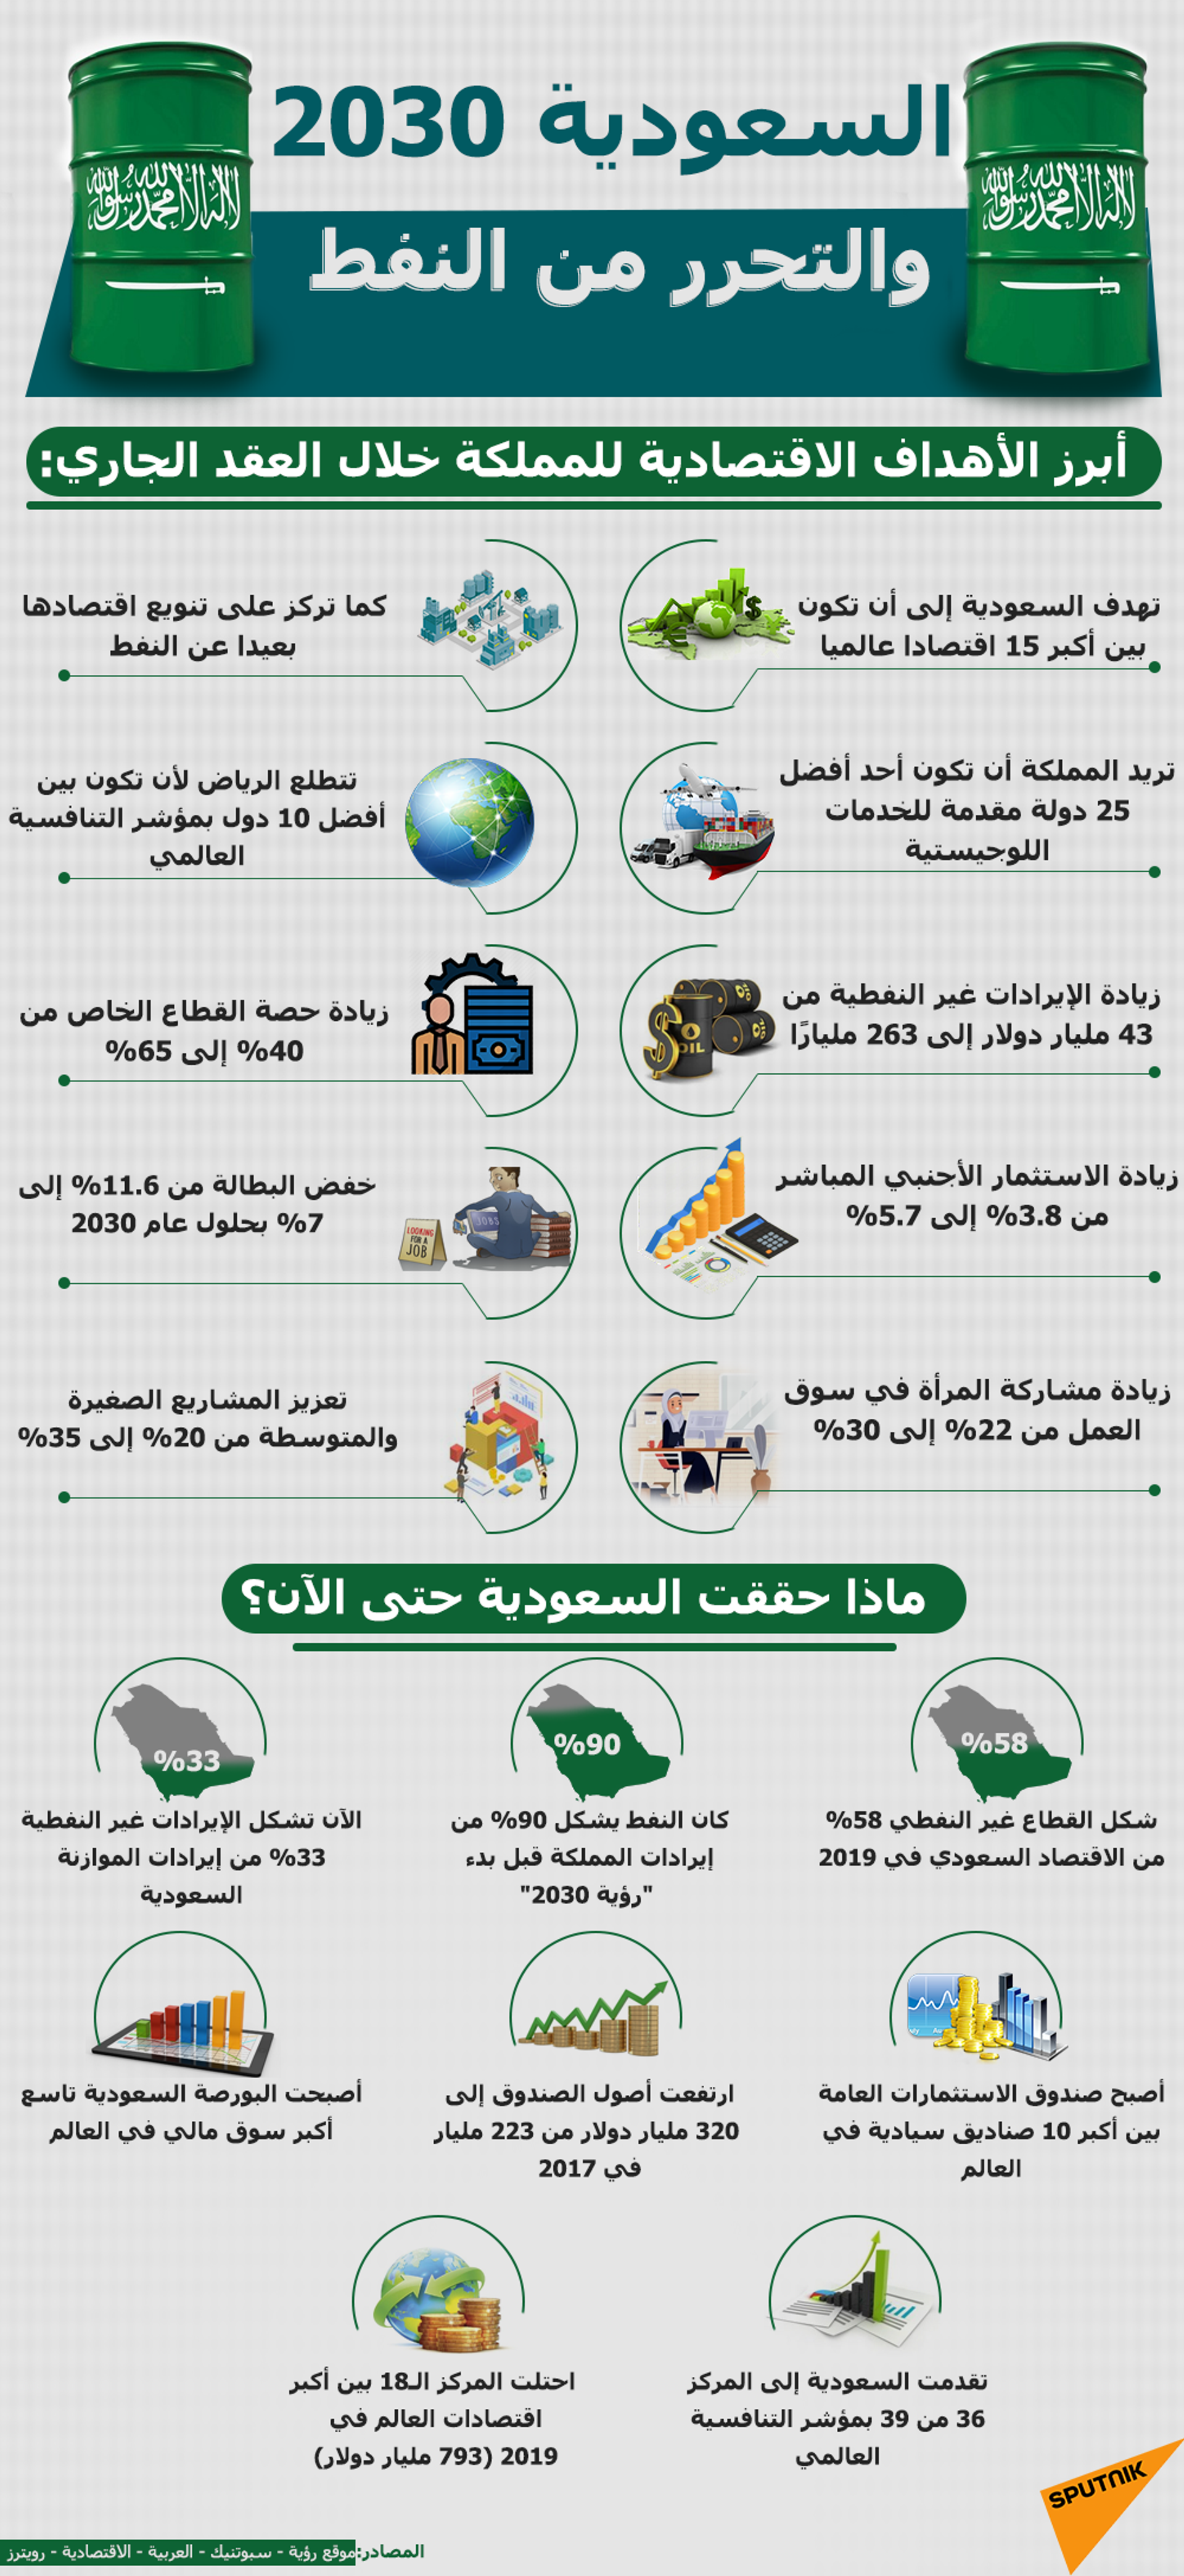 نظام التخصيص الجديد في السعودية... ما أهميته وما فوائده الاقتصادية؟ - سبوتنيك عربي, 1920, 27.03.2021